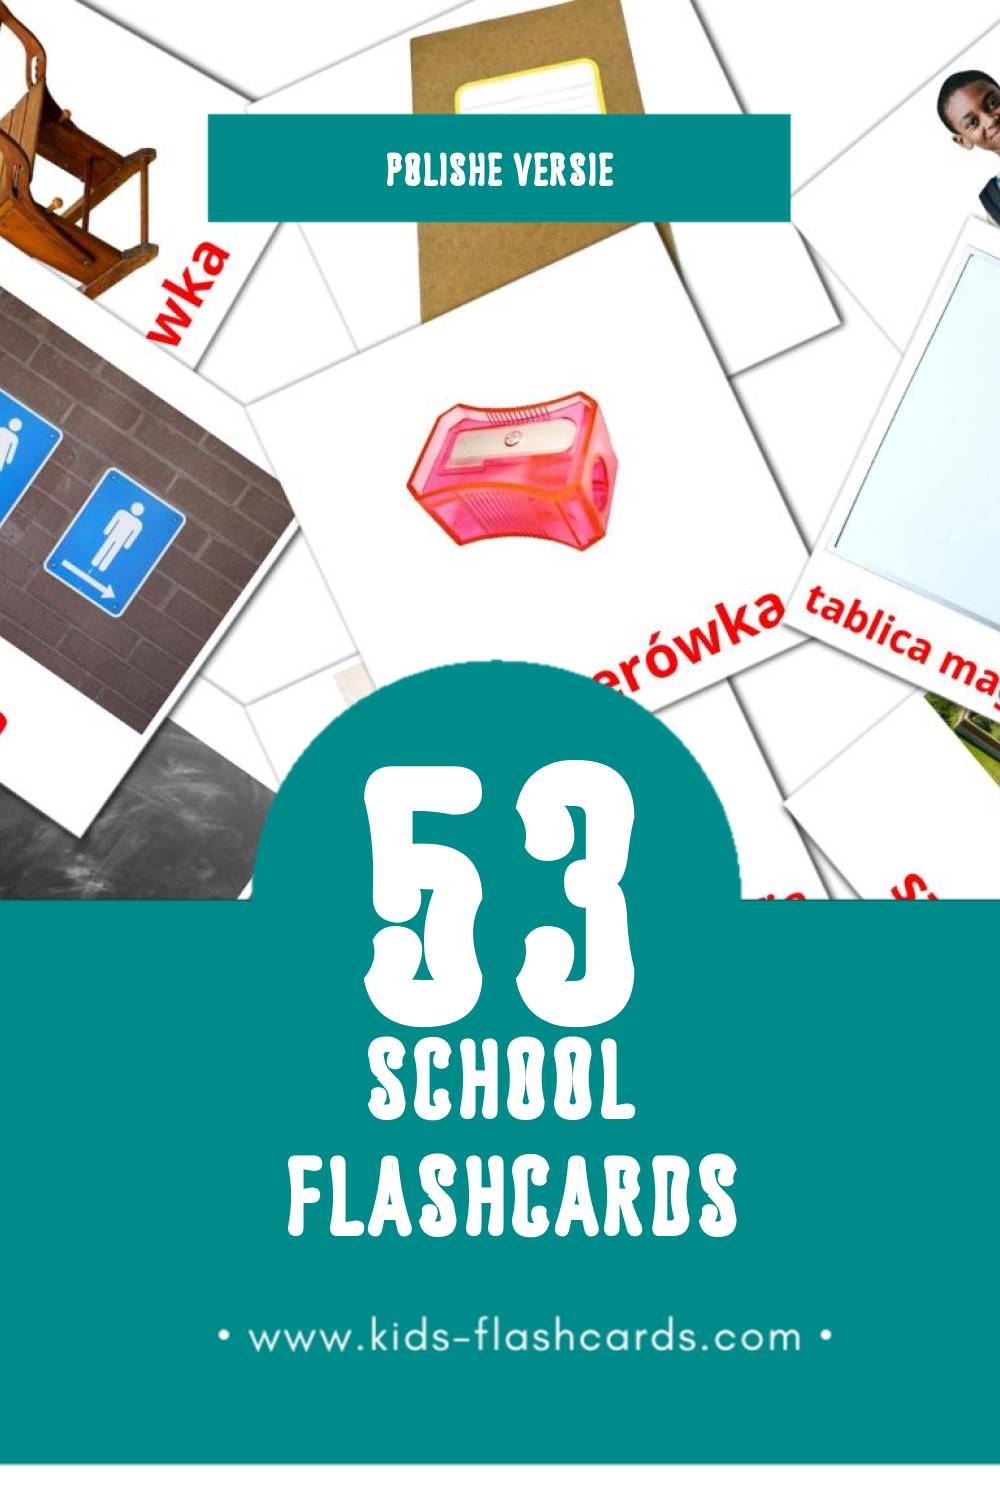 Visuele Szkoła Flashcards voor Kleuters (53 kaarten in het Polish)